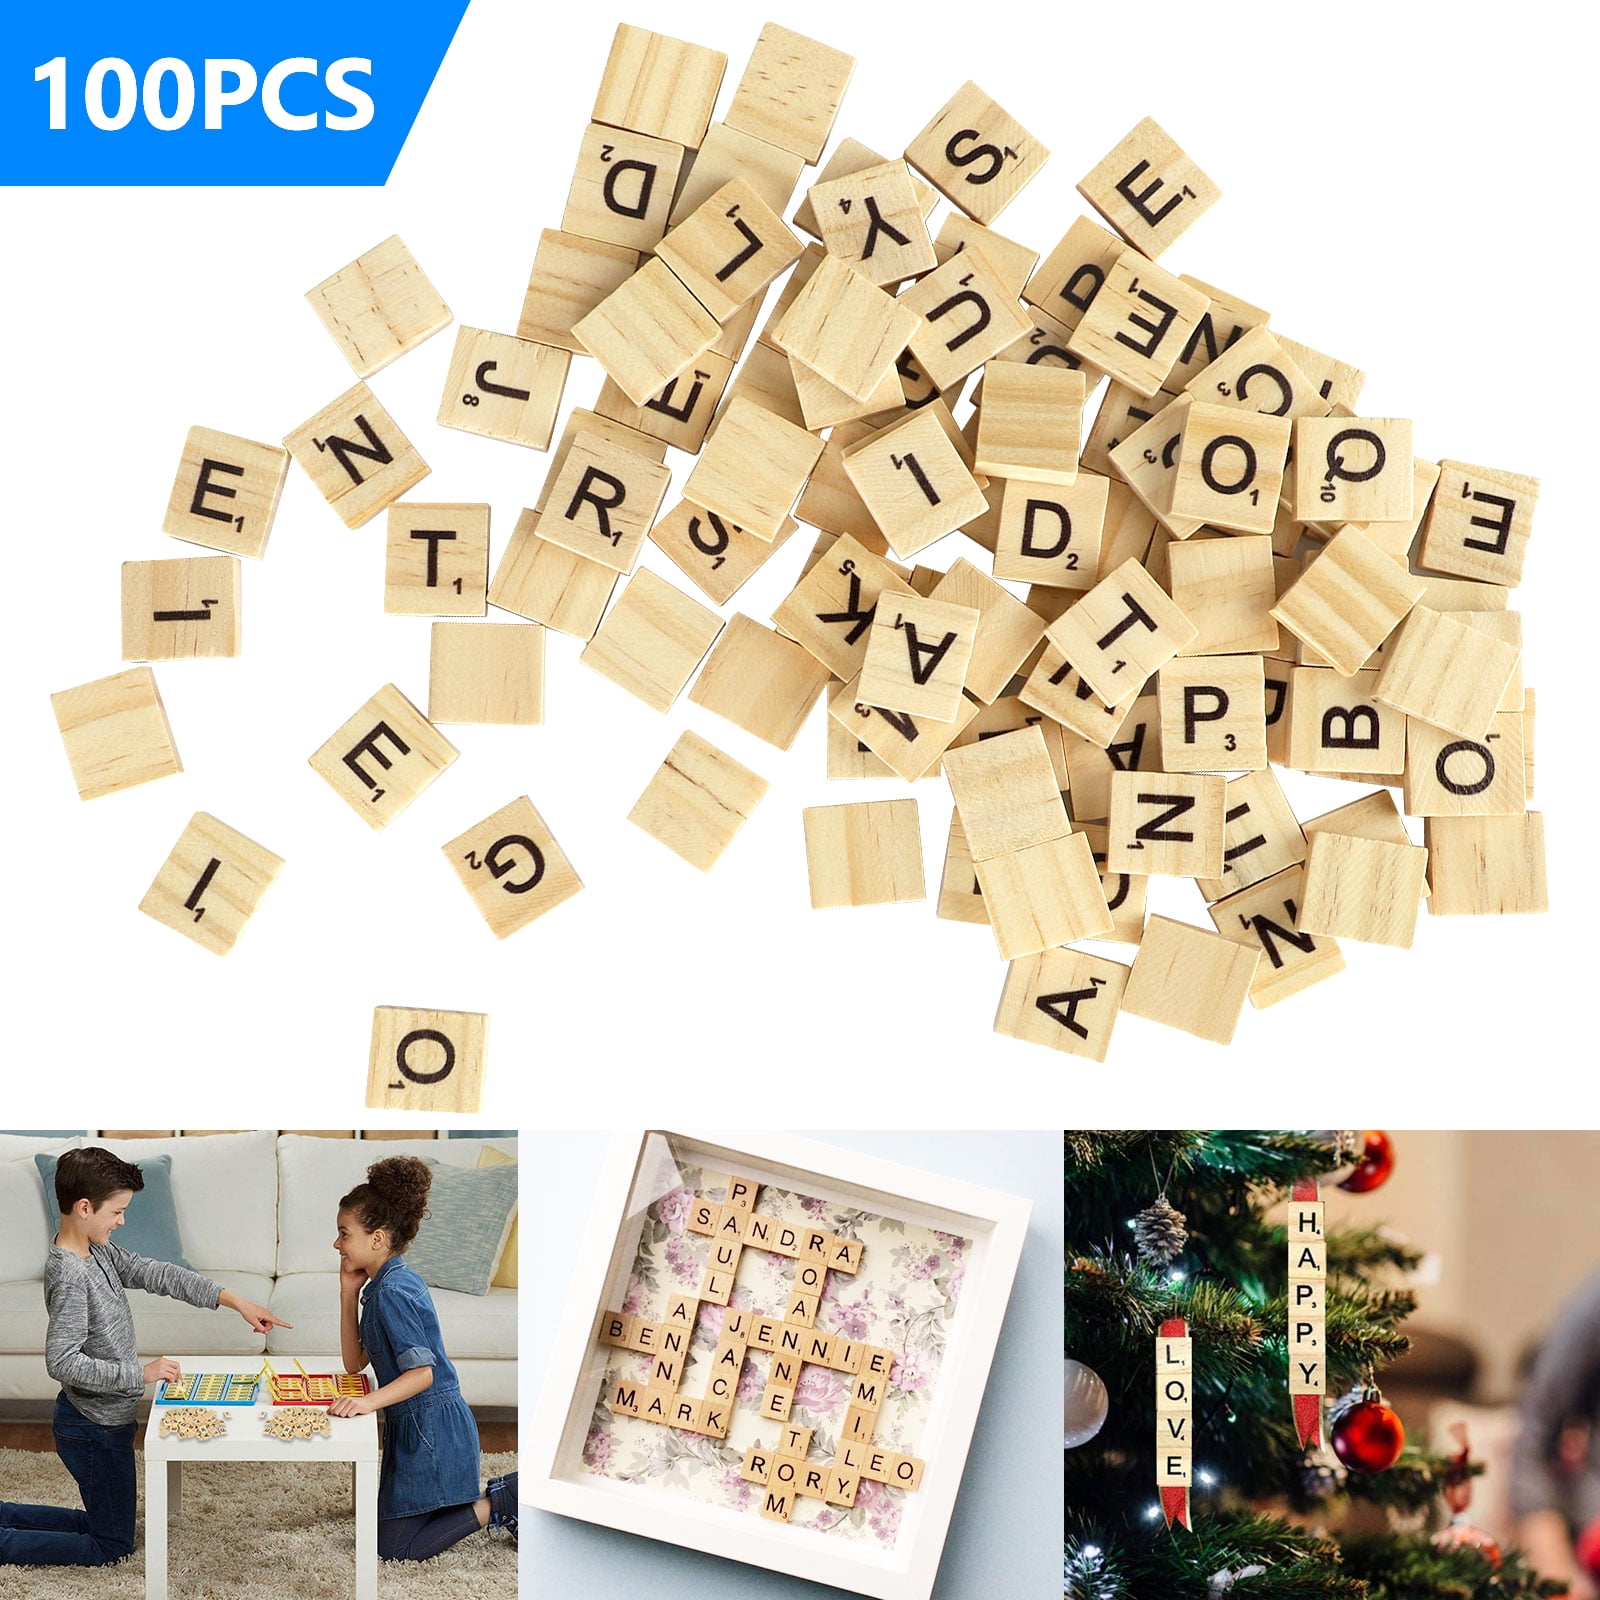 110 Best Scrabble Tiles ideas  scrabble tiles, scrabble, scrabble crafts